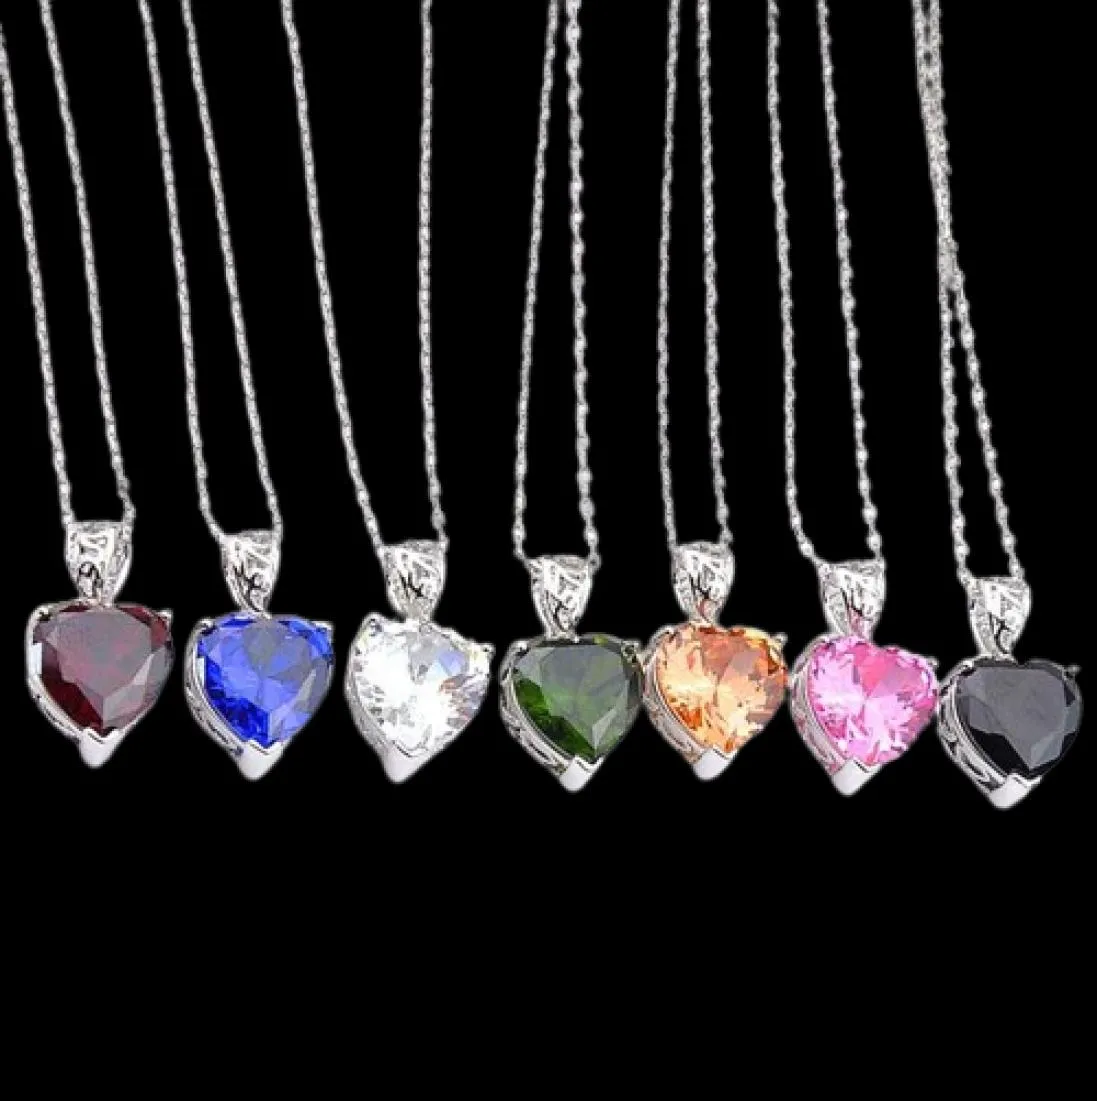 Yeni Luckyshine 12 PCS Love Heart Mix Renk Morganite Peridot Citrine Gems Gümüş Düğün Partisi Hediye Kolye Kolyeleri